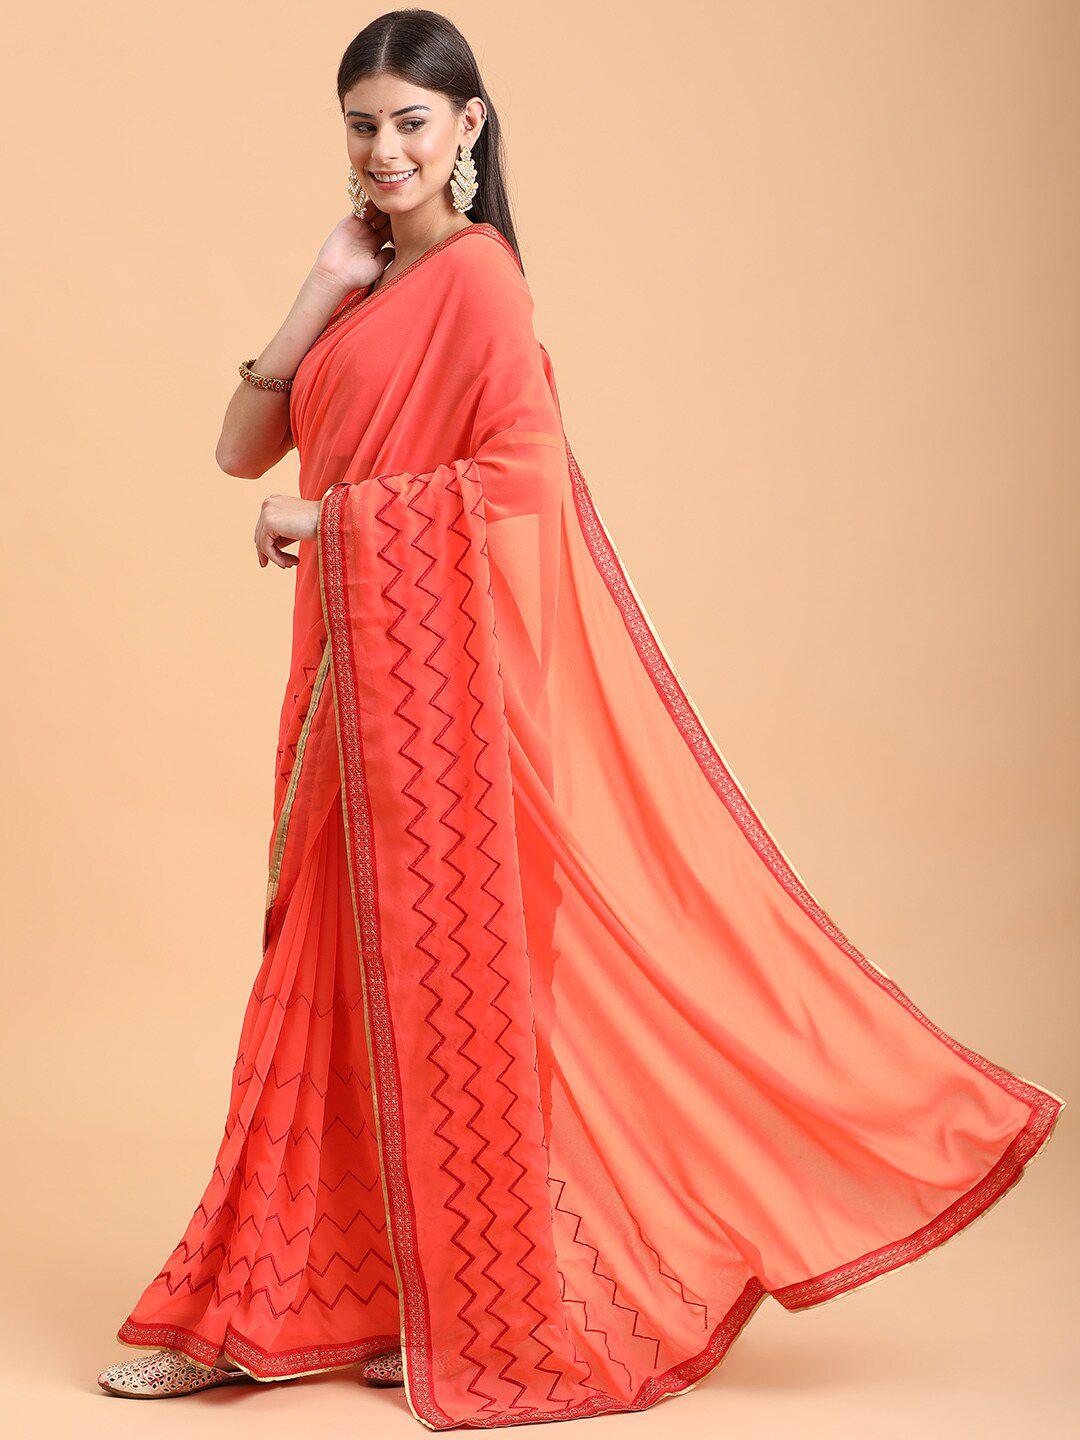 sangria women orange sarees